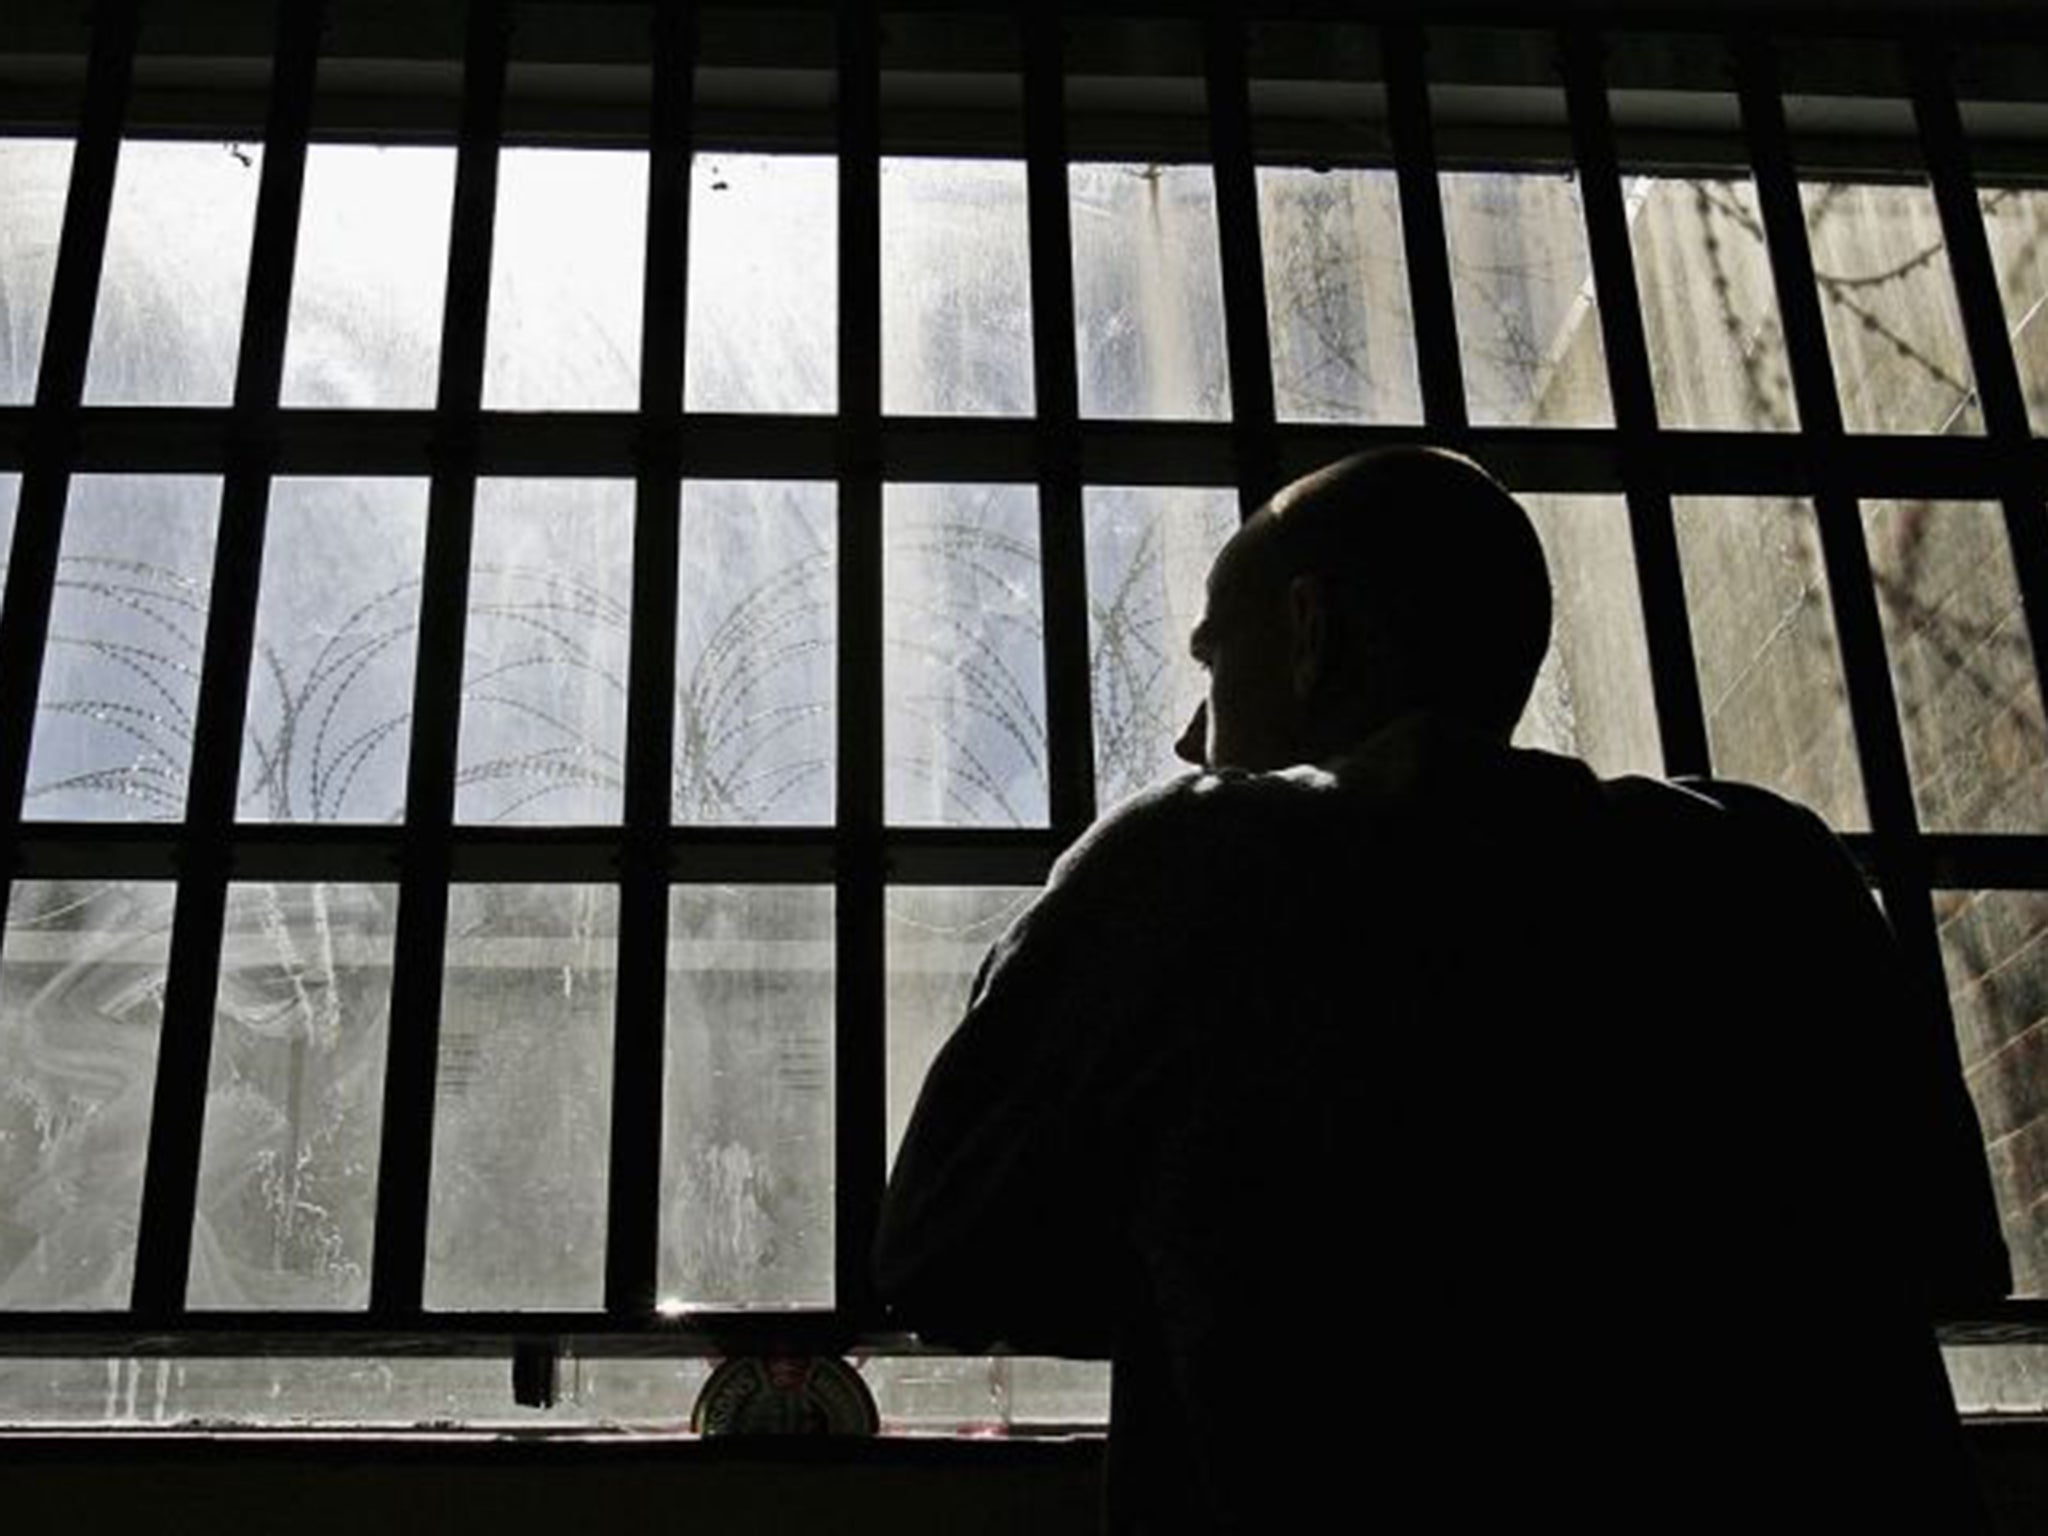 Prison Masturbation - Sex in prison: report calls for 'urgent' survey of inmates ...